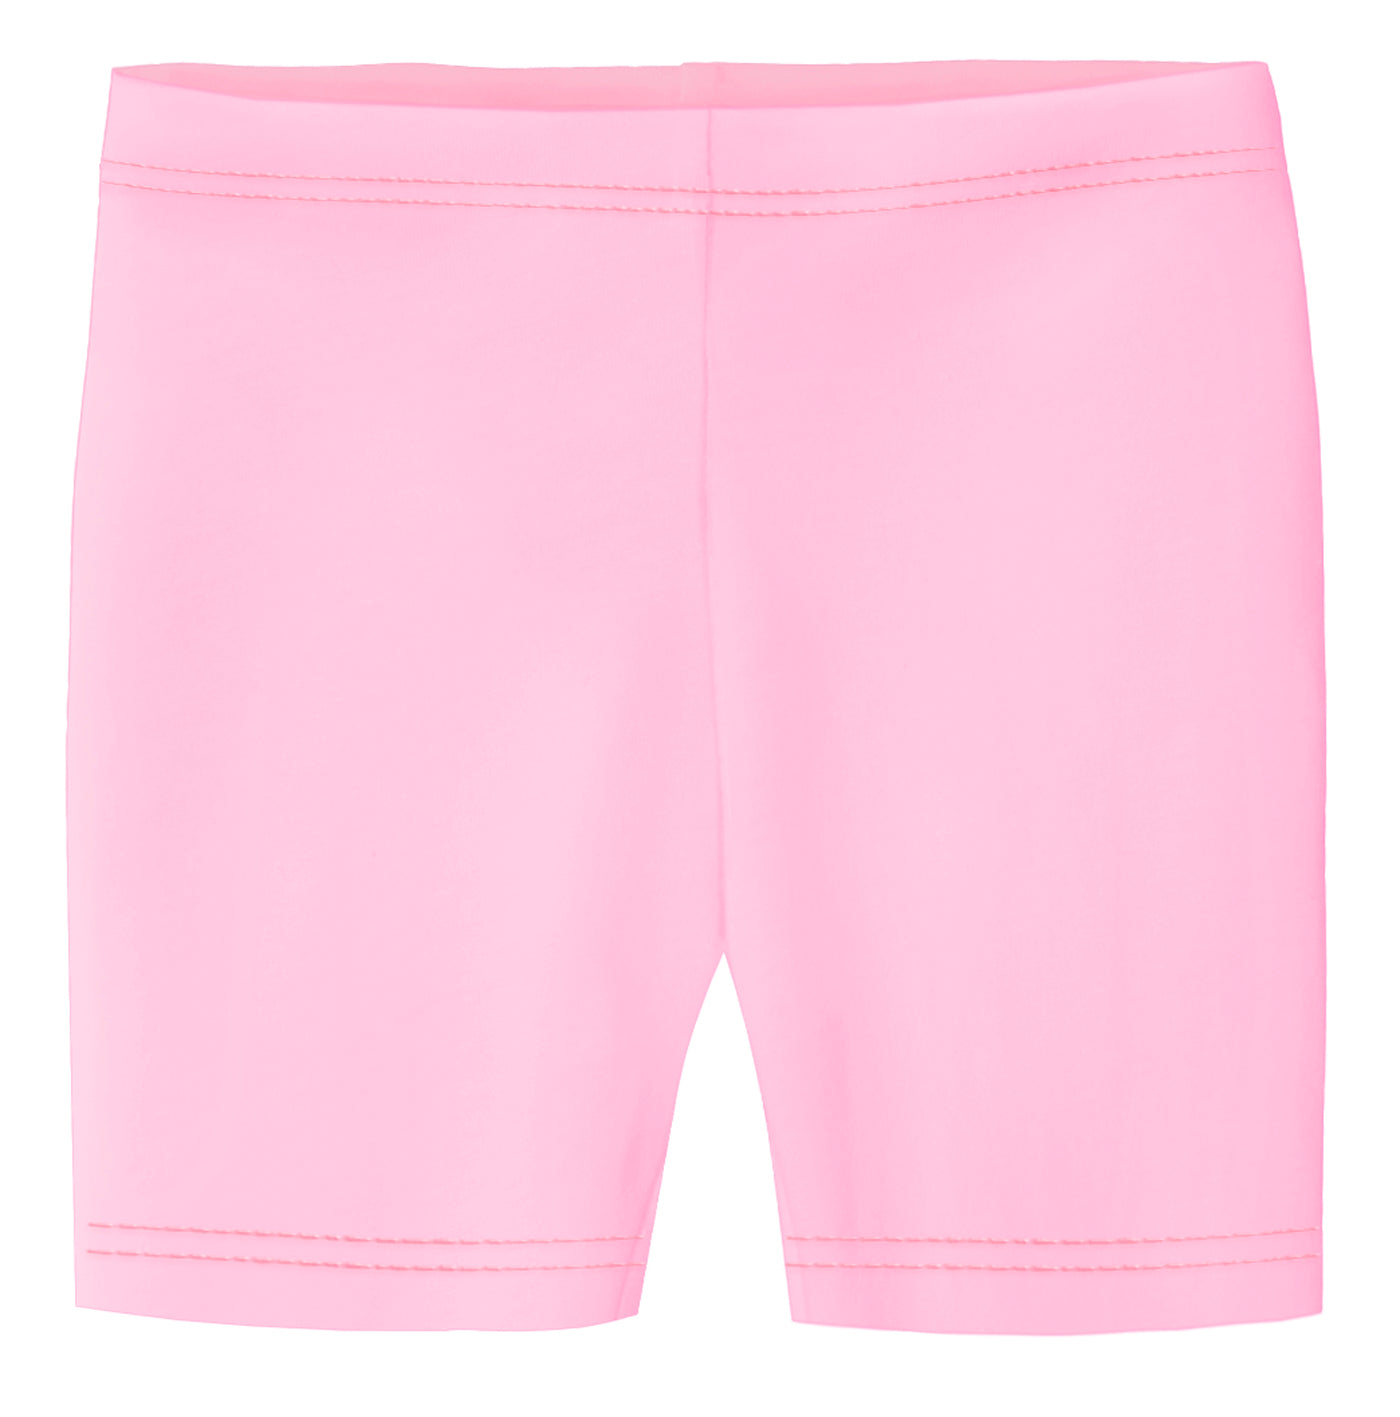 Ribbed long cycling shorts - Rose pink